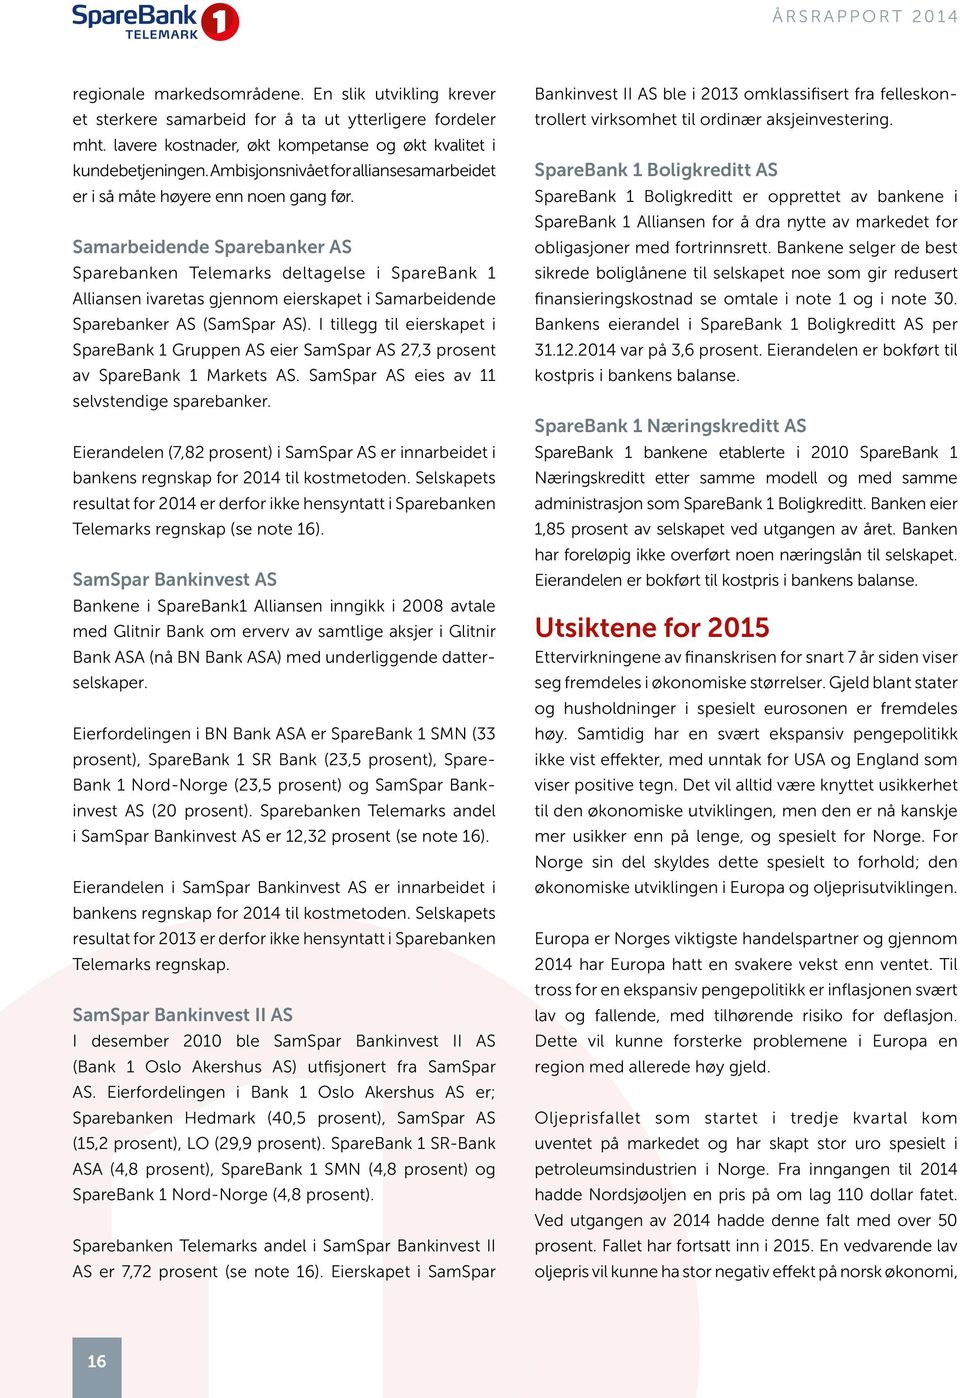 Samarbeidende Sparebanker AS Sparebanken Telemarks deltagelse i SpareBank 1 Alliansen ivaretas gjennom eierskapet i Samarbeidende Sparebanker AS (SamSpar AS).